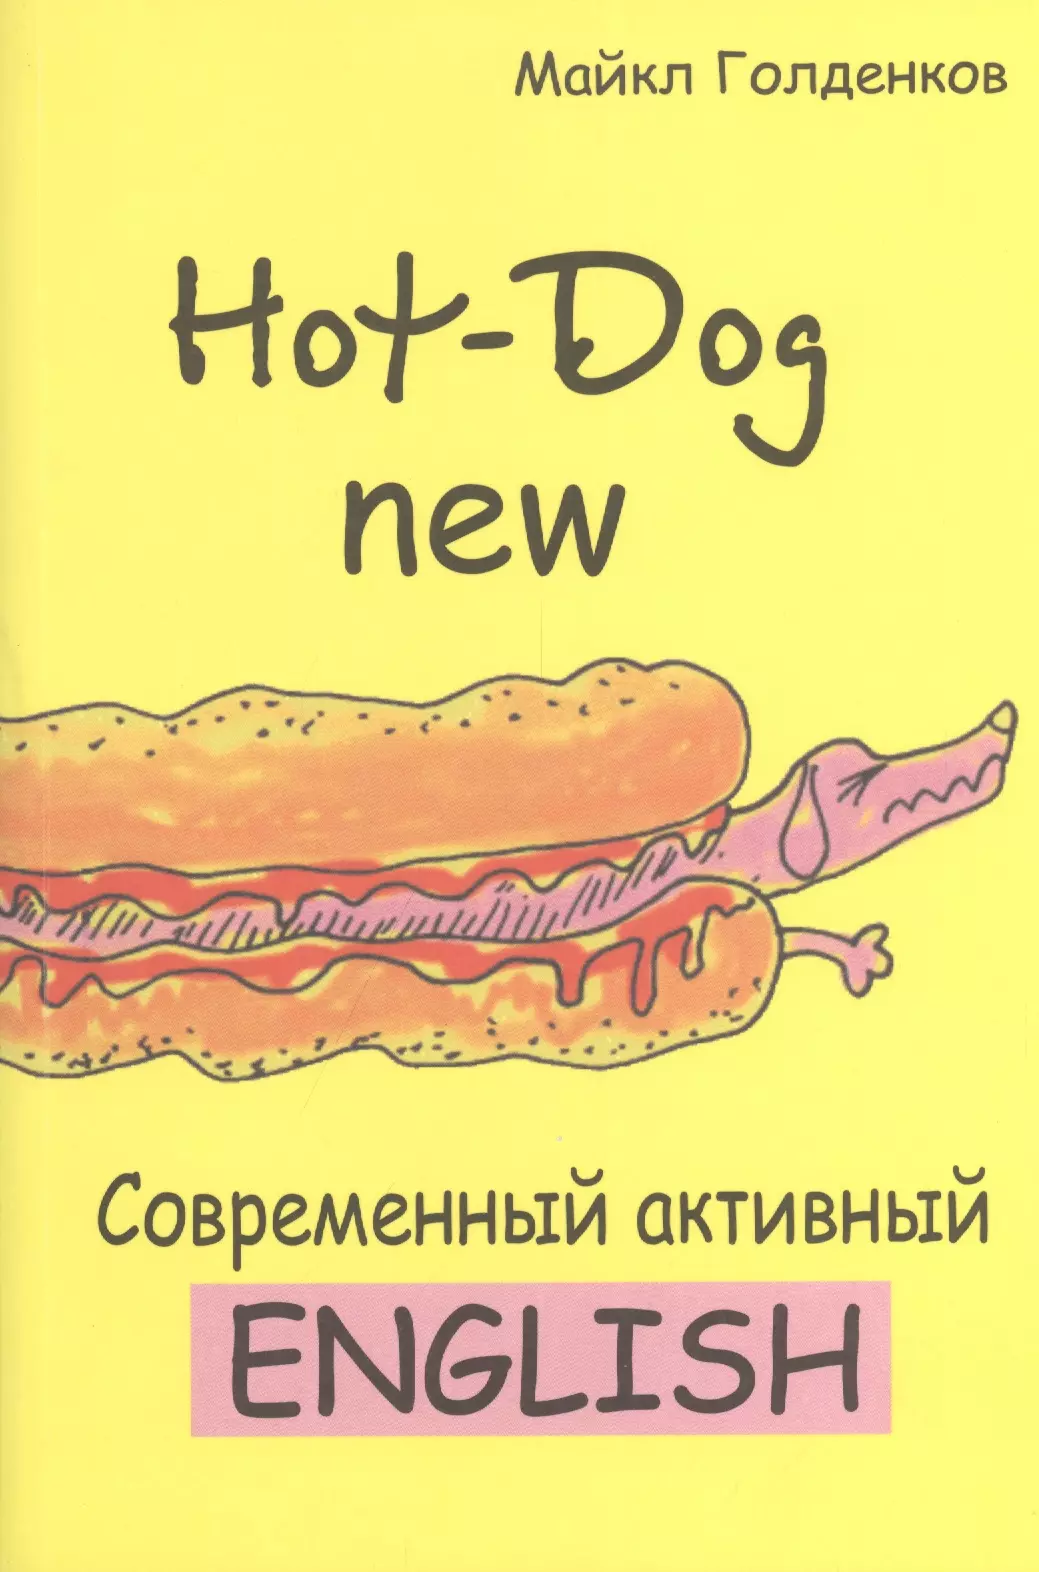 Голденков Михаил Анатольевич Hot-Dog new Современный активный английский (м) Голденков